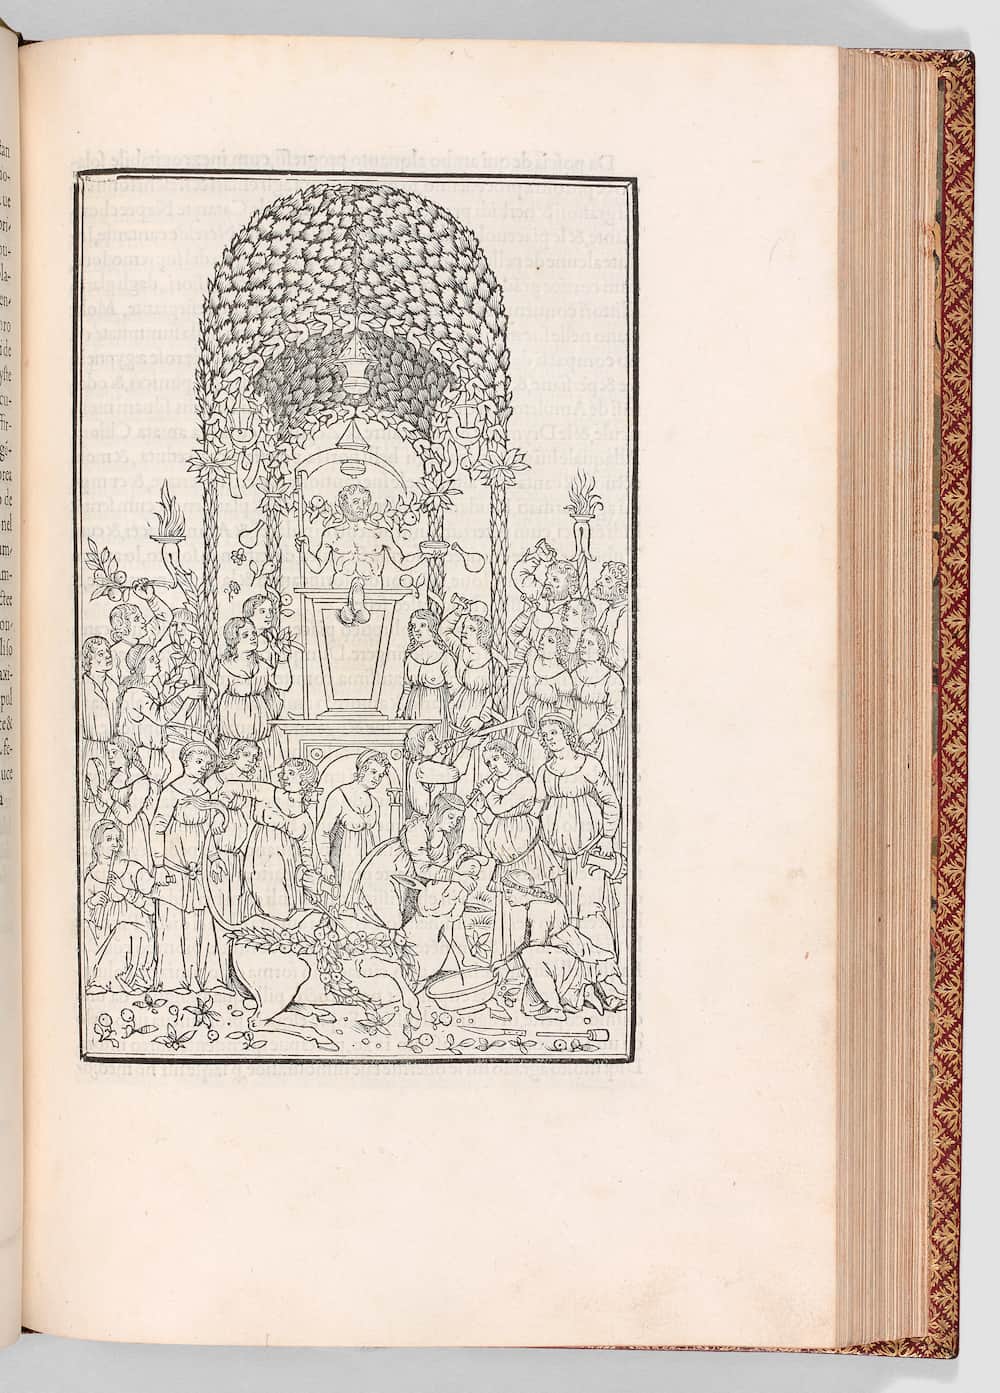 13231 Francesco Colonna Hypnerotomachia Poliphili  [Le Songe de Poliphile] Venise, Alde Manuce, 1499